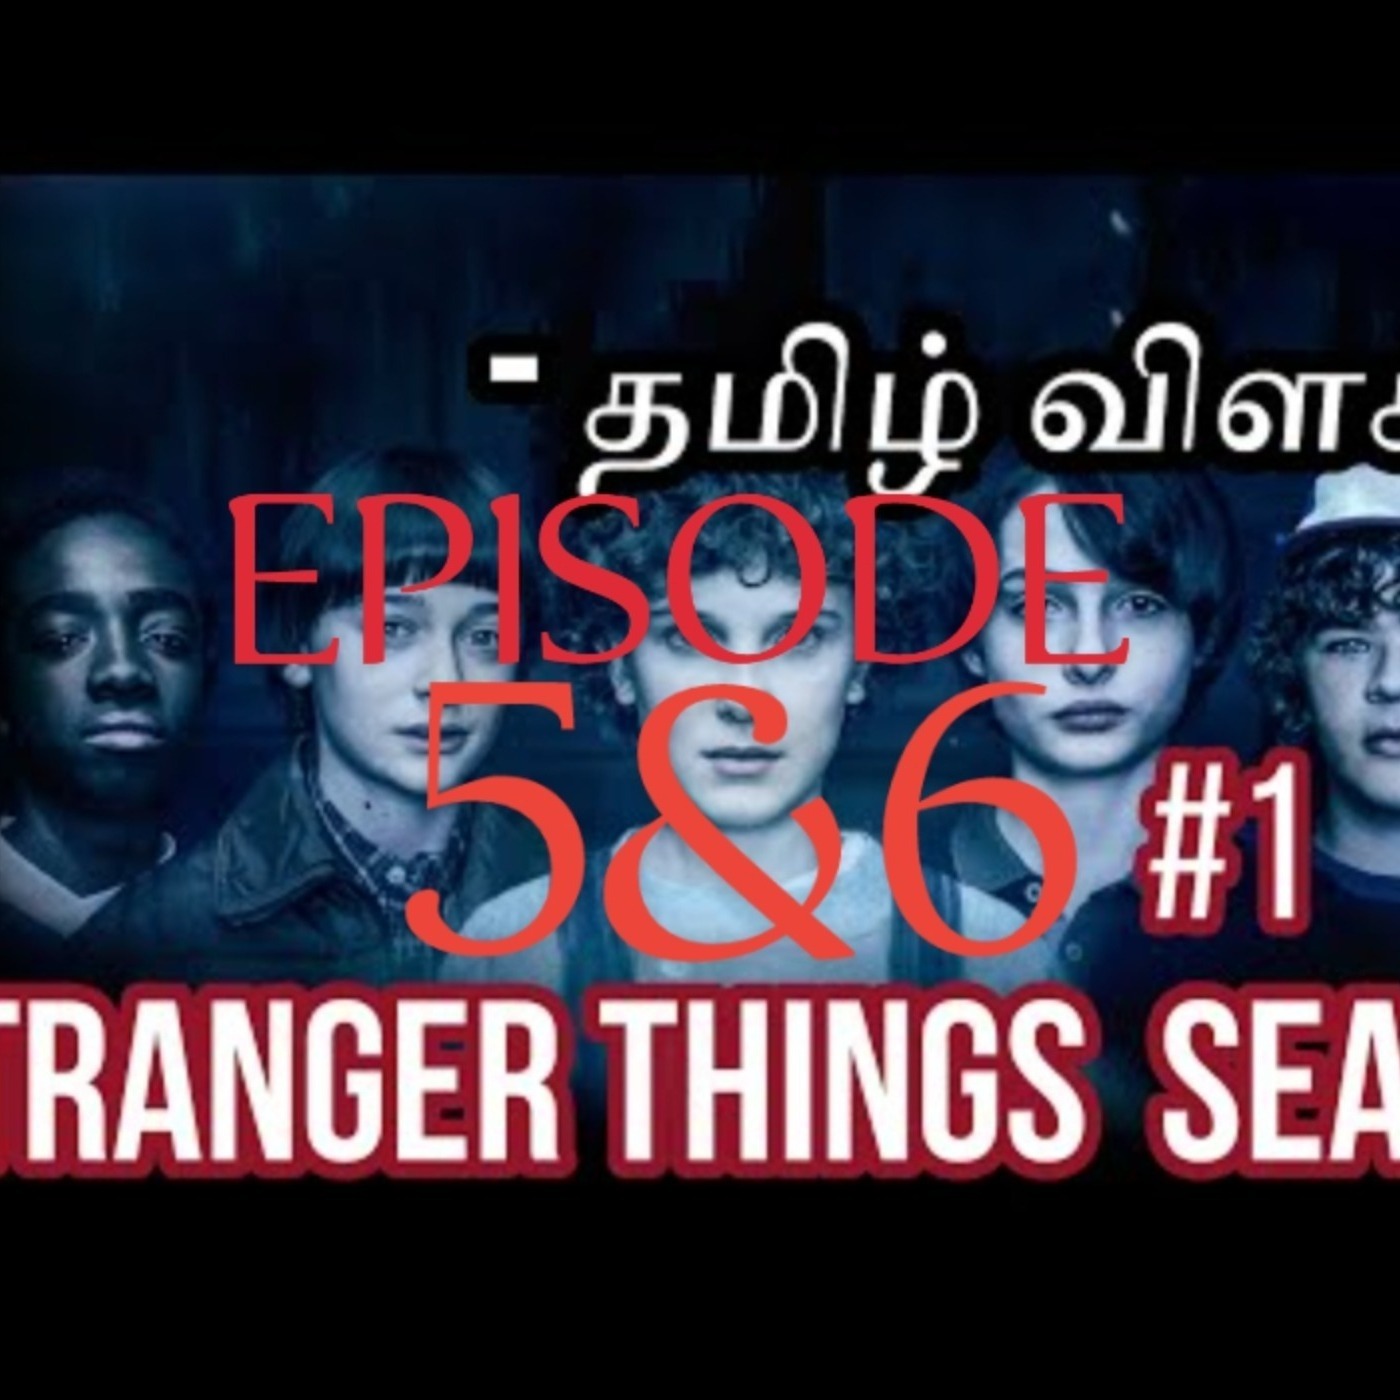 STRANGER THINGS Season 1 Episode 5&6 recap தமிழ் in Tamil